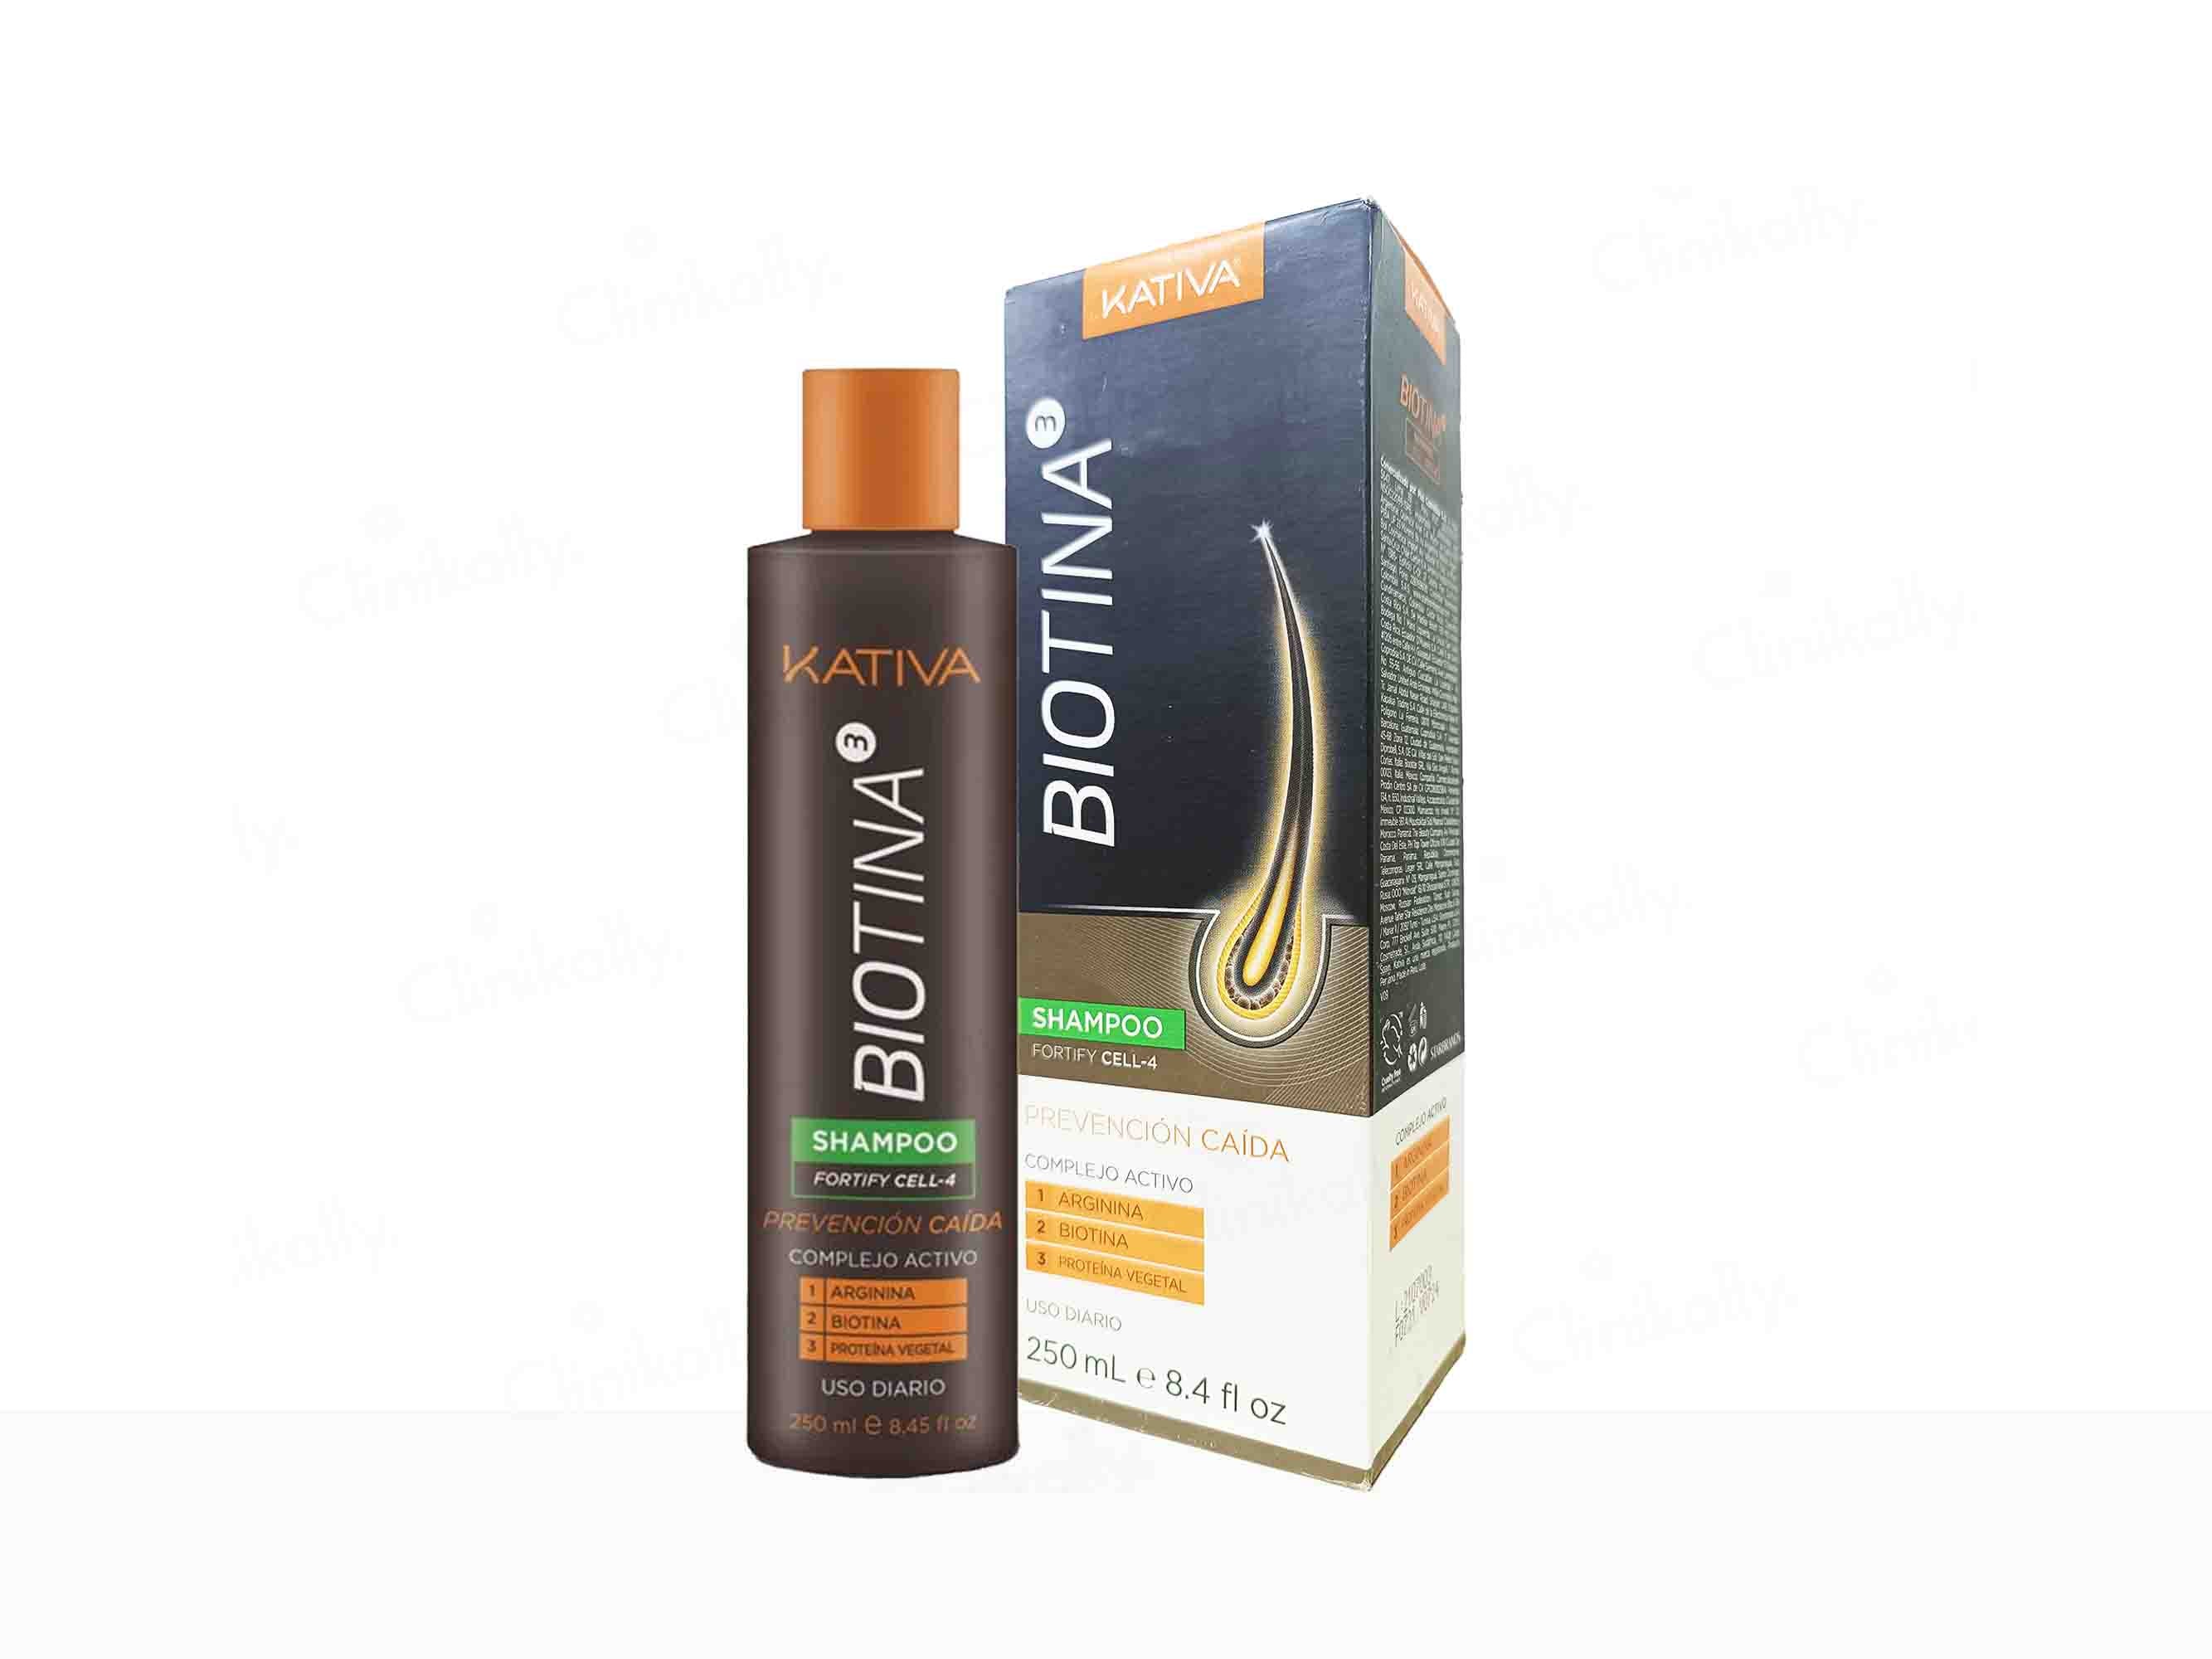 Kativa Biotina Shampoo - Clinikally